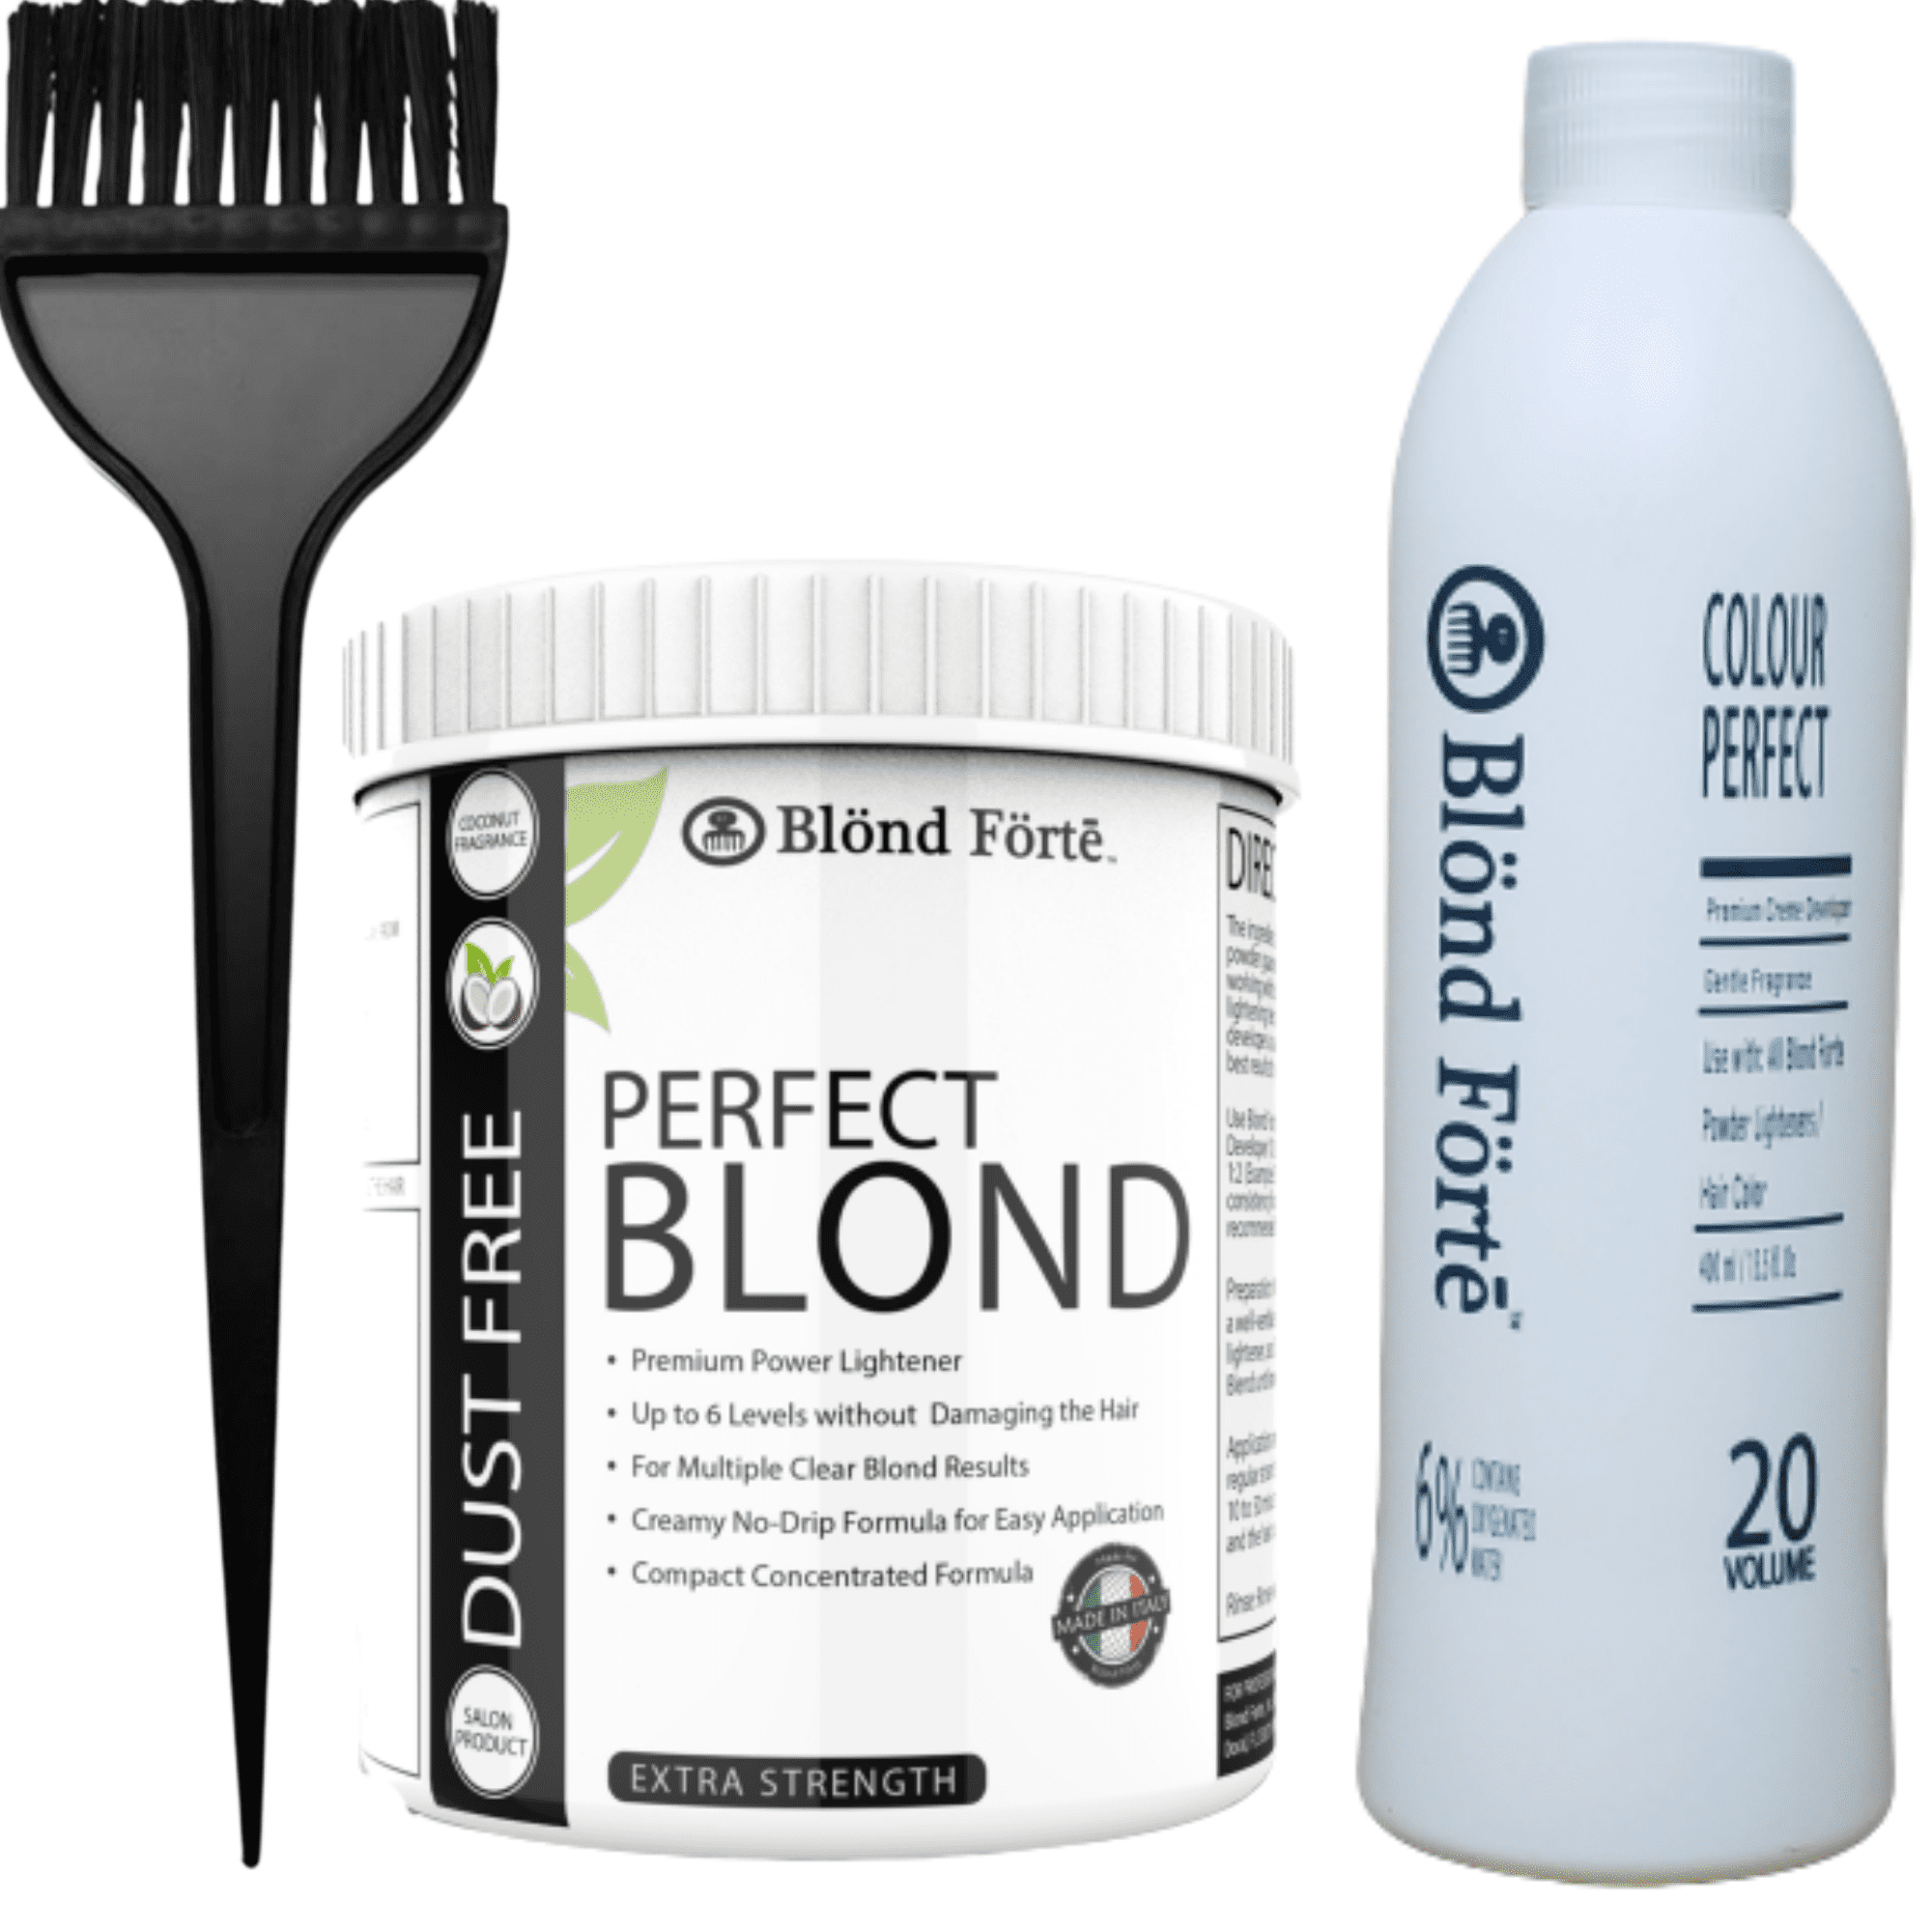 Blond Forte Perfect Blond 169 Oz Premium Hair Lightener 6 Developer 6 20 Volume Brush 